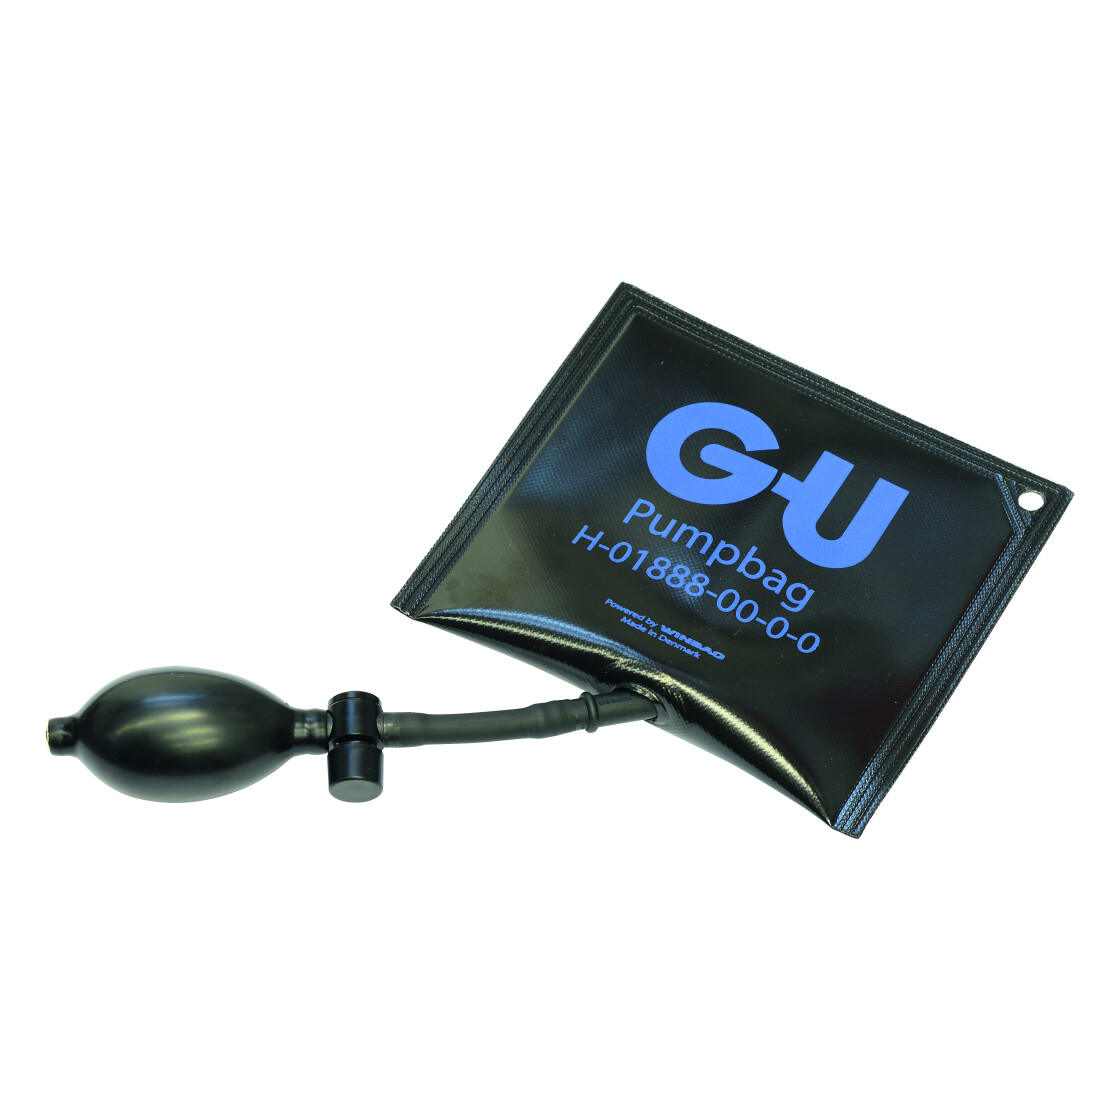 GU Pumpbag Montagekissen H-01888-00-0-0 -  -  Fensterbeschläge und Fensterersatzteile günstig online bestellen, 18,90 €